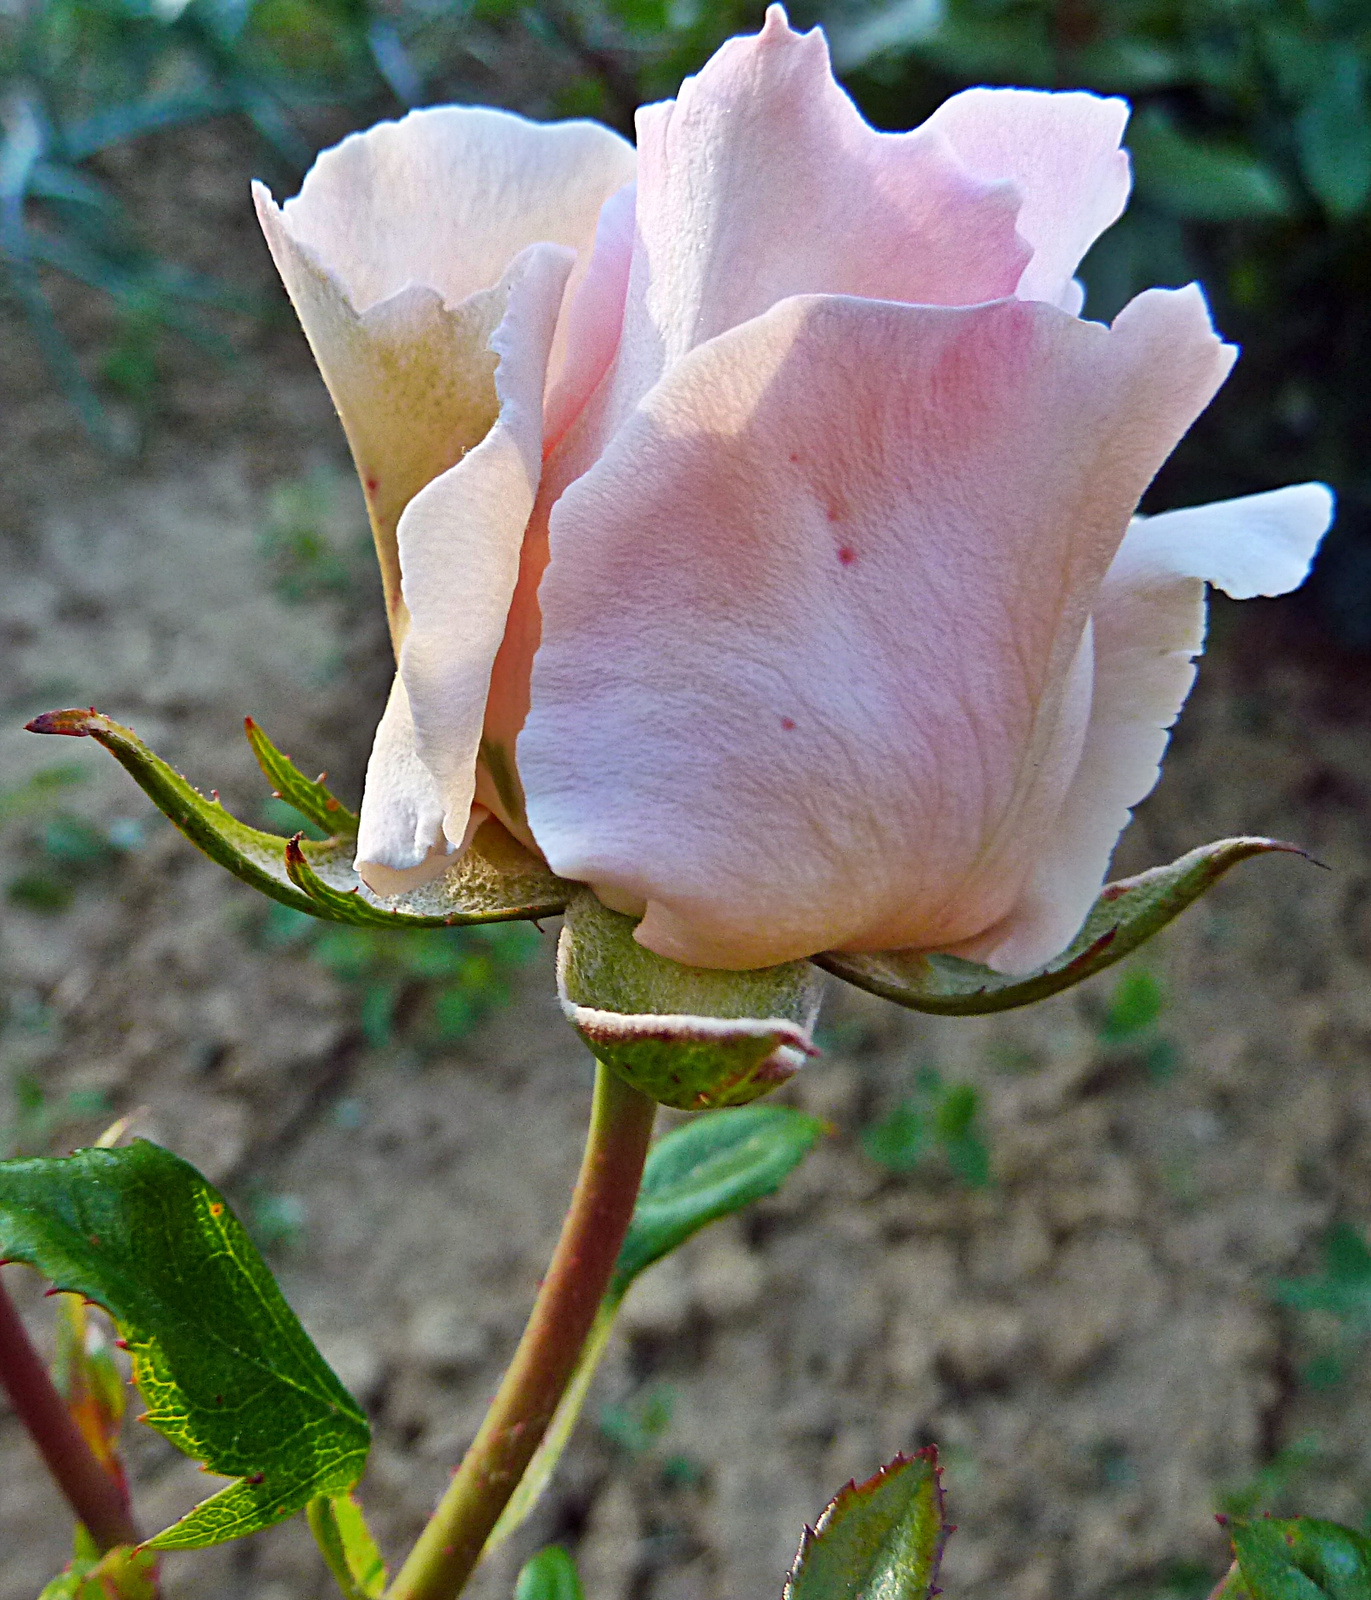 P1110861 rózsa